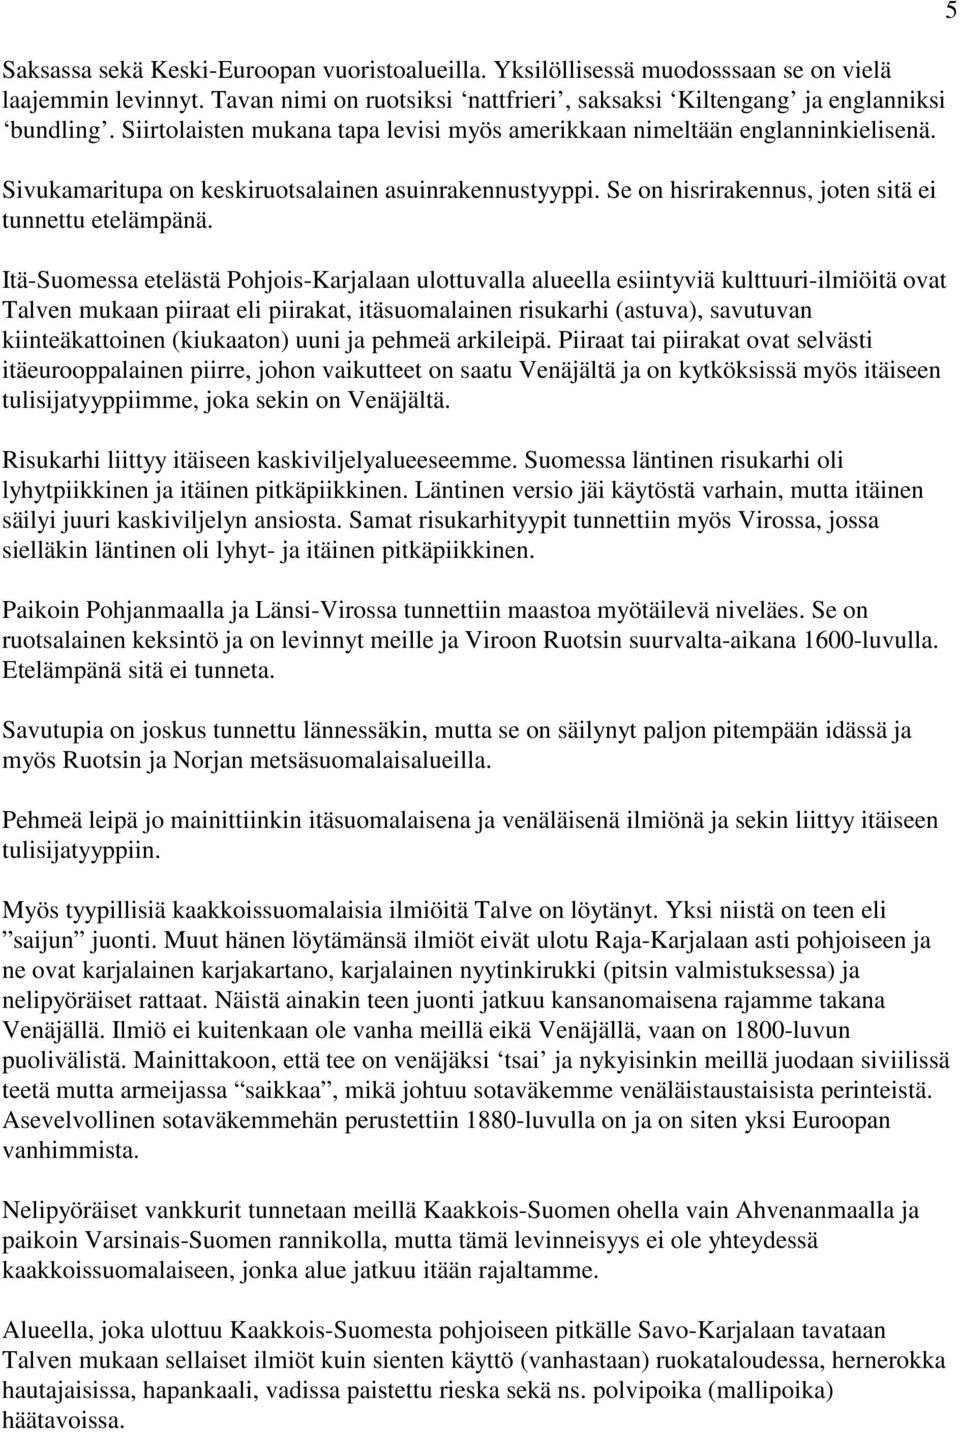 Itä-Suomessa etelästä Pohjois-Karjalaan ulottuvalla alueella esiintyviä kulttuuri-ilmiöitä ovat Talven mukaan piiraat eli piirakat, itäsuomalainen risukarhi (astuva), savutuvan kiinteäkattoinen